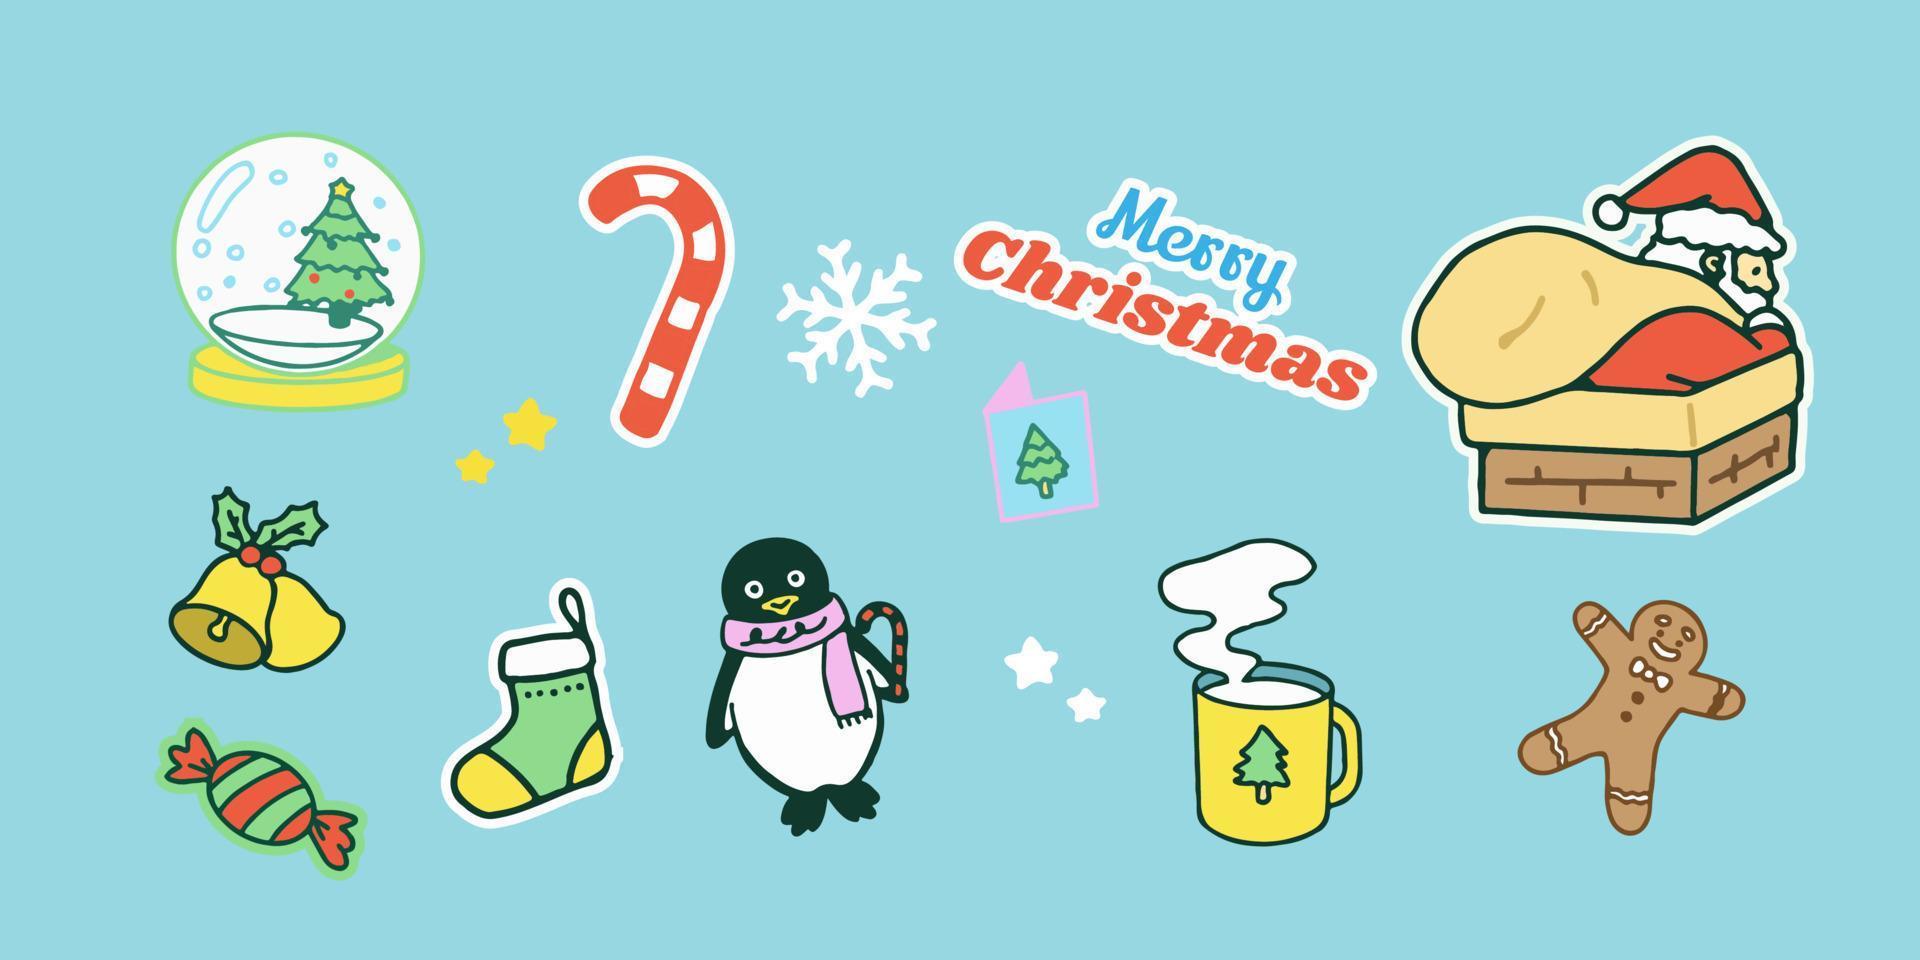 colección de adornos navideños, regalos navideños, ropa de lana de punto de invierno, pan de jengibre, árboles, regalos y pingüinos. ilustración de vector colorido en estilo de dibujos animados plana